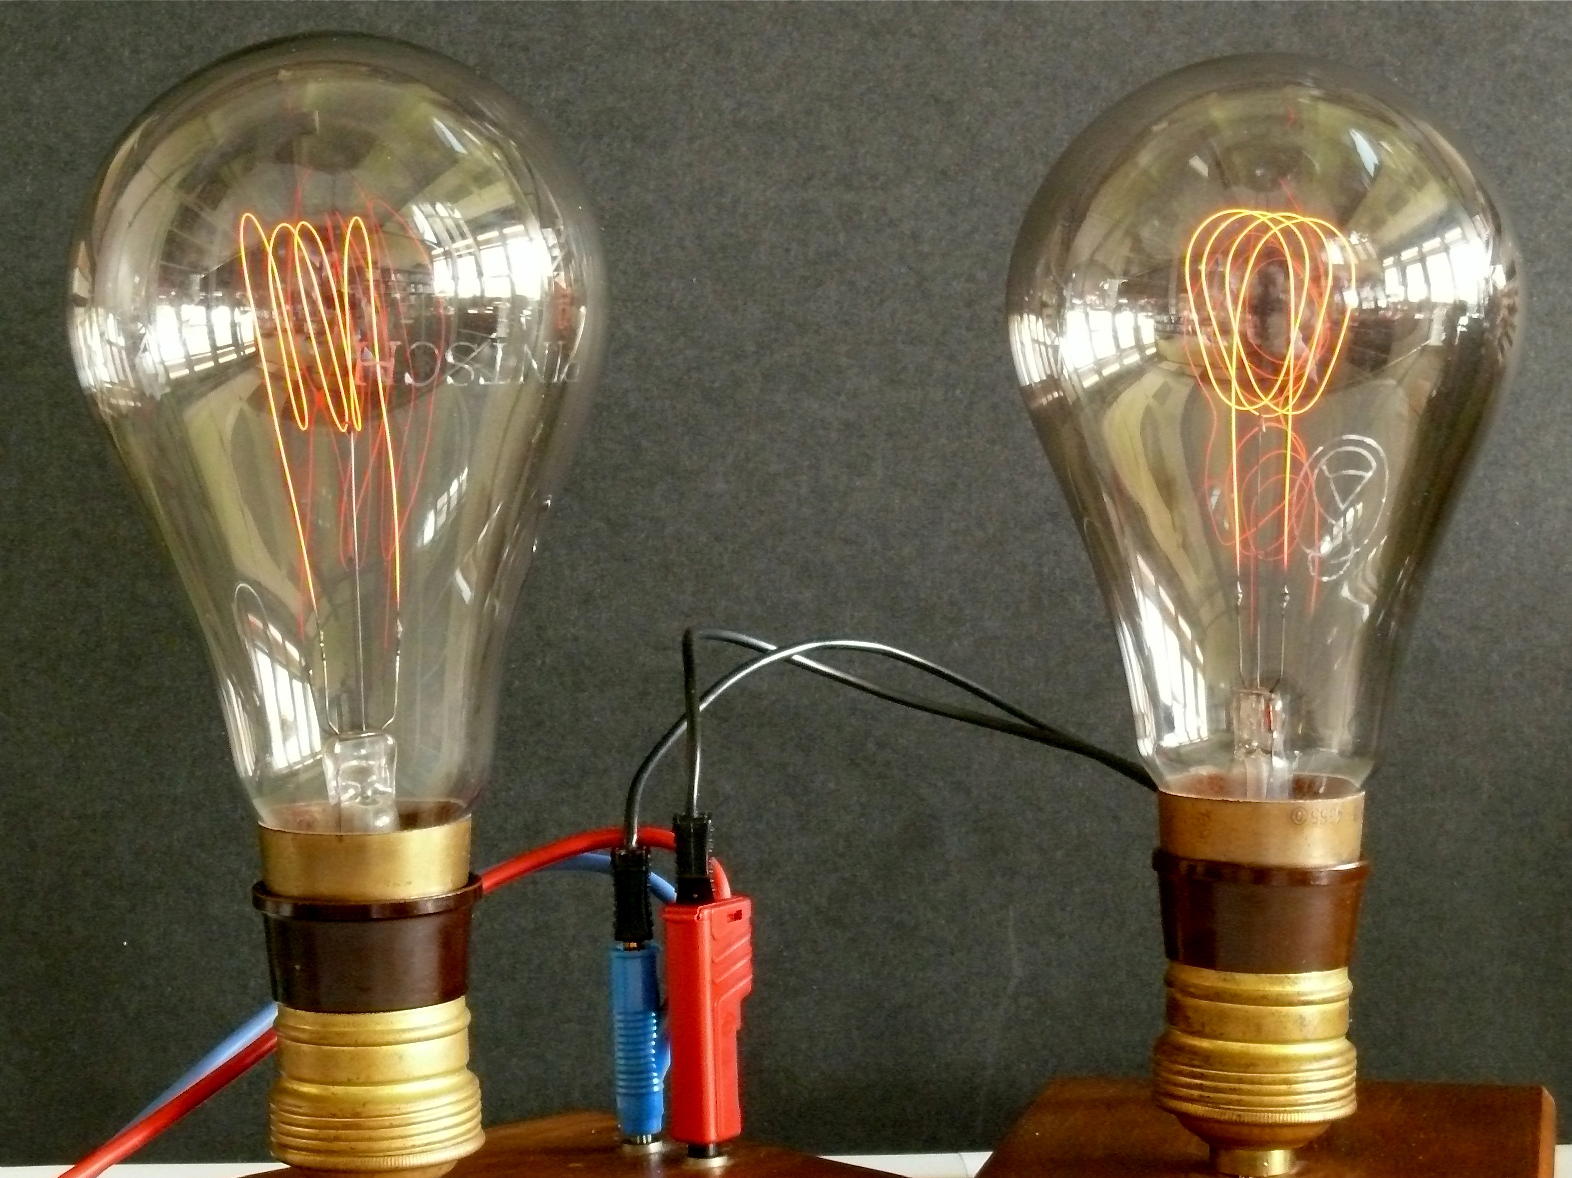 Grandes lampes à incandescence “poire” de forte puissance
(filament de carbone)